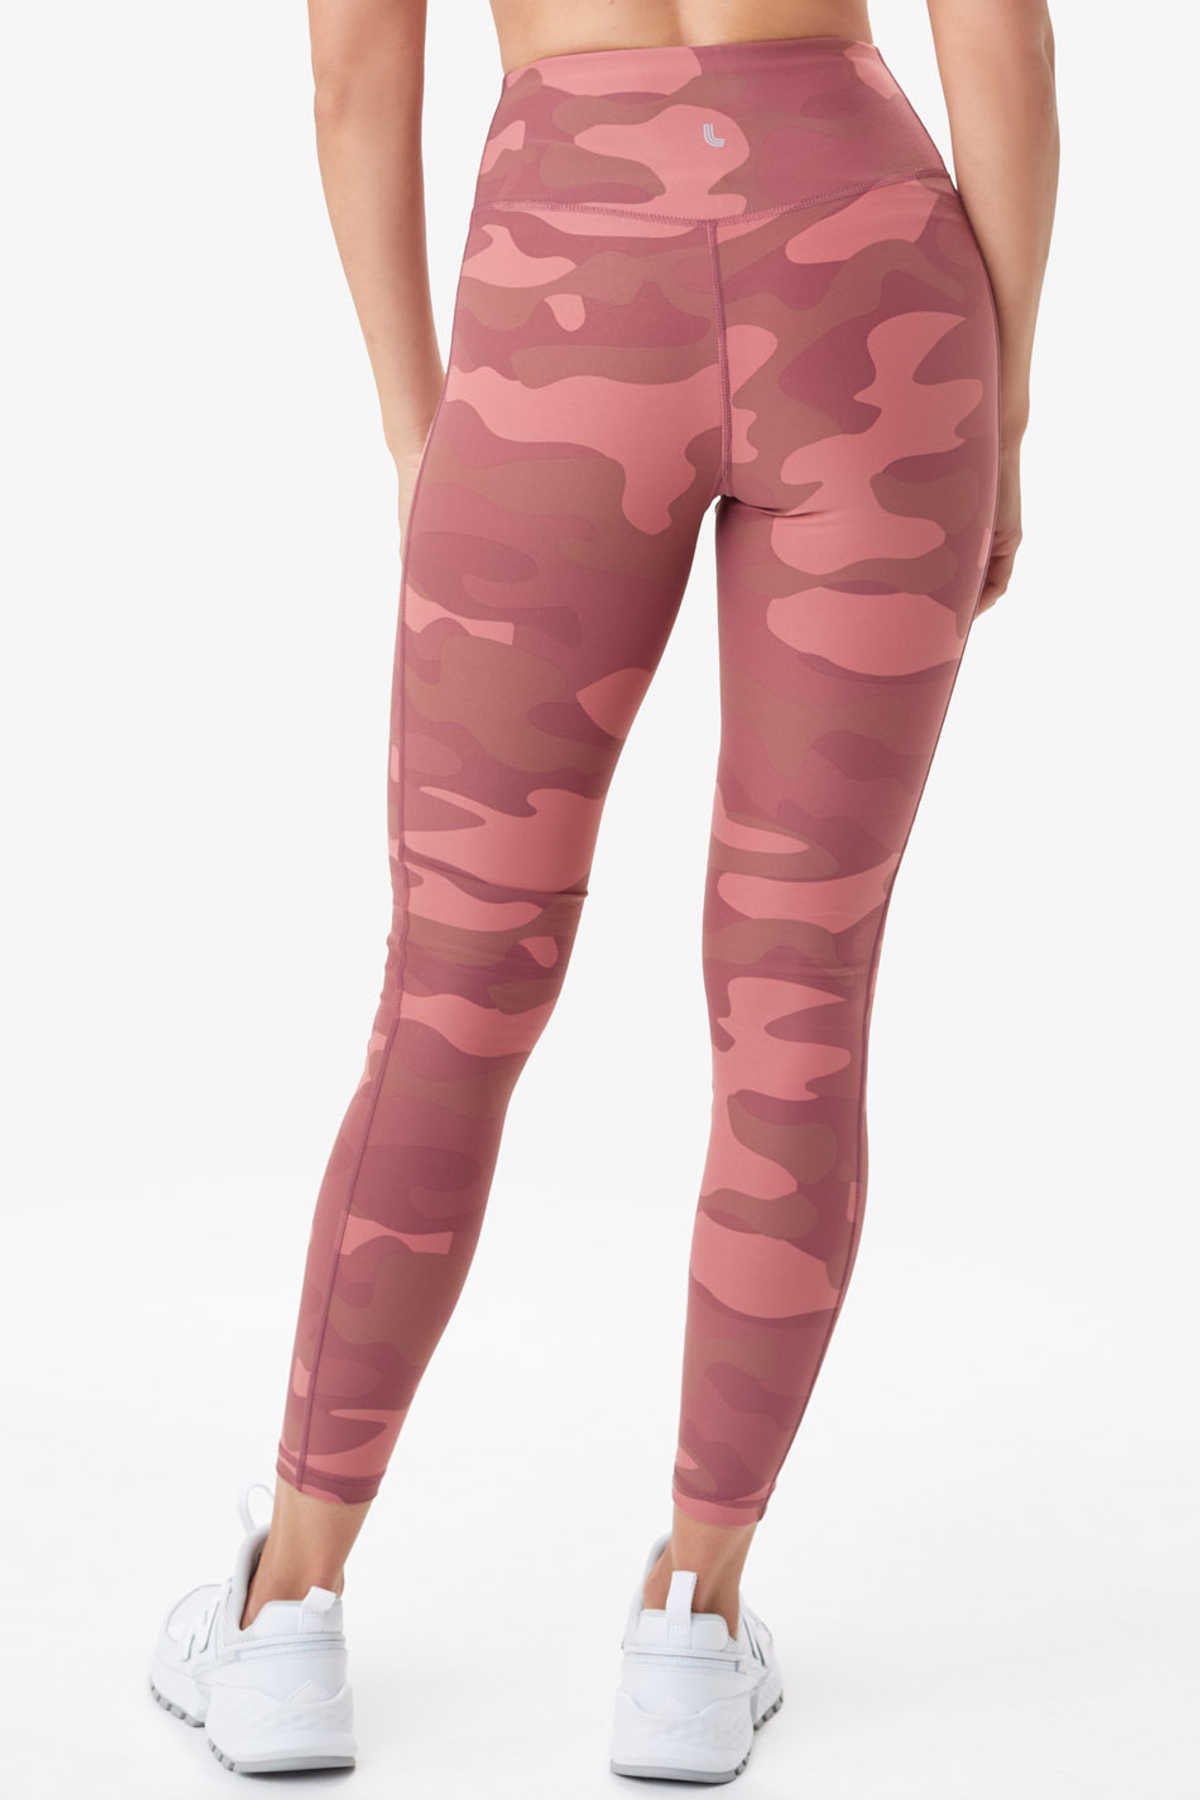  Pink Camo Leggings